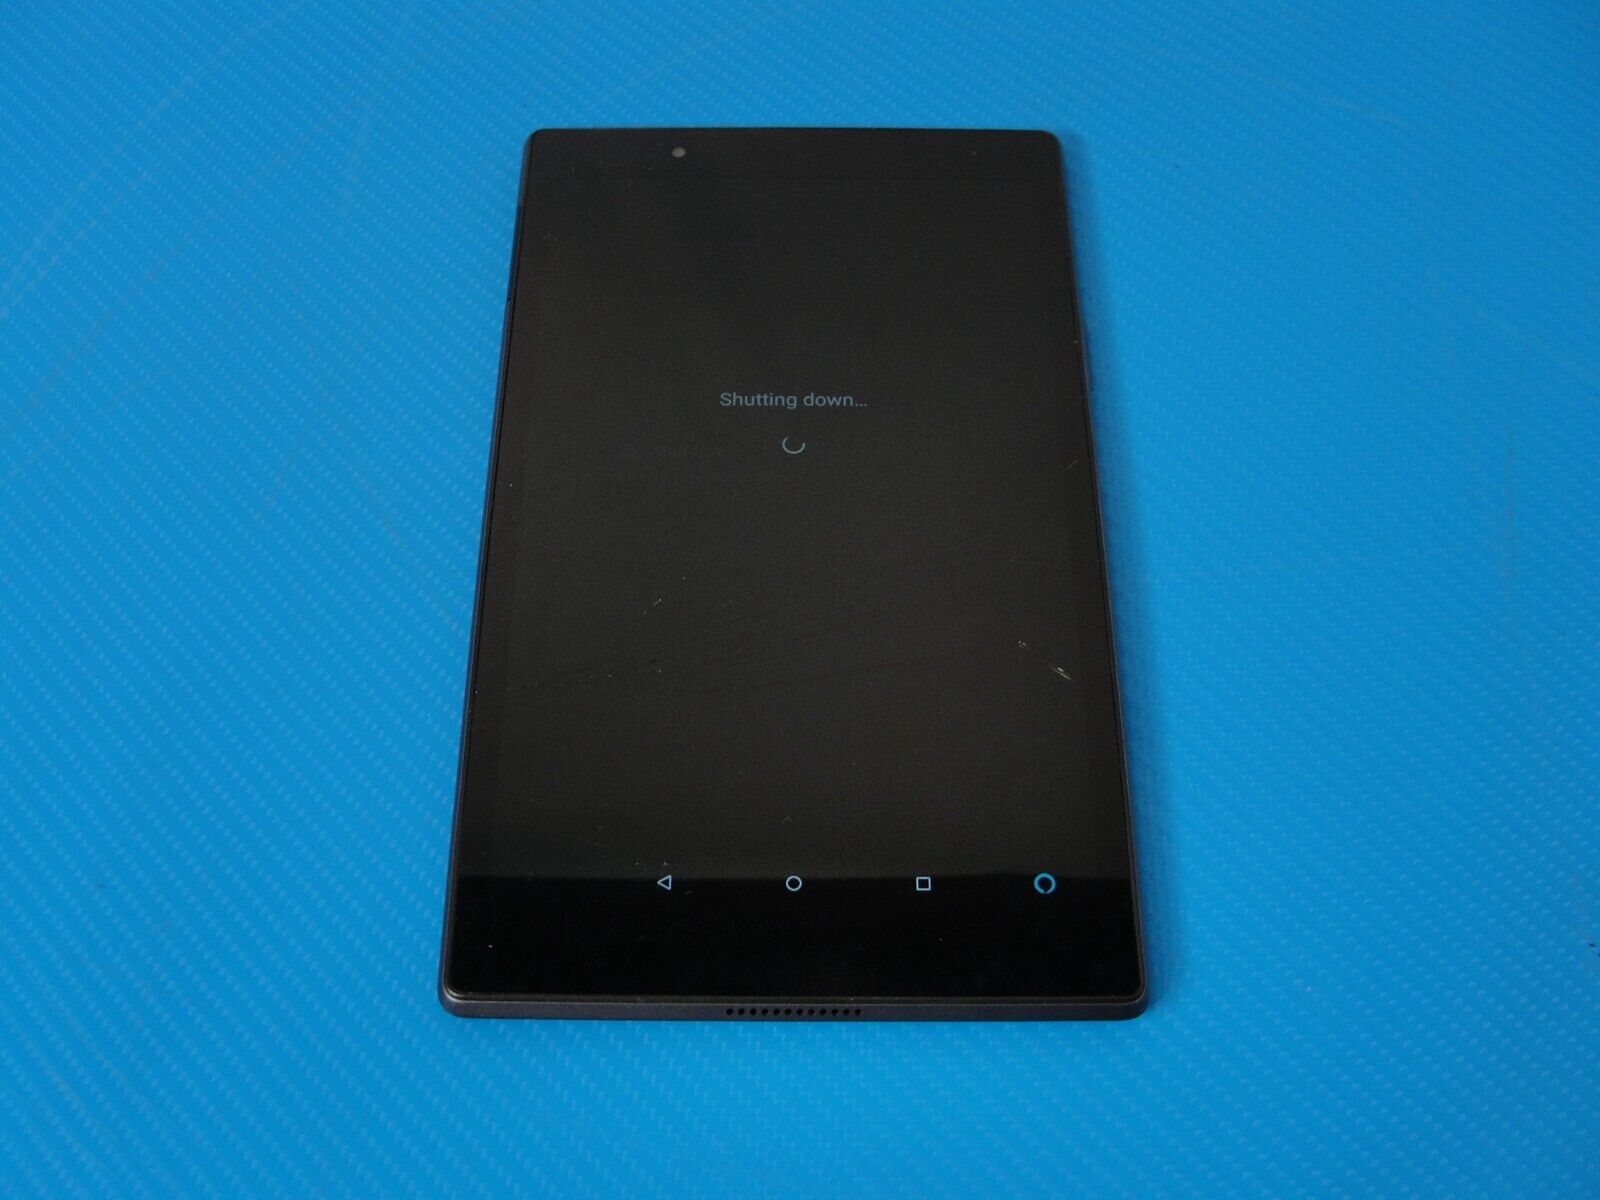 LENOVO TAB 4 16GB WIFI TB-8504F 8 Tablet - GRAY /AS IS